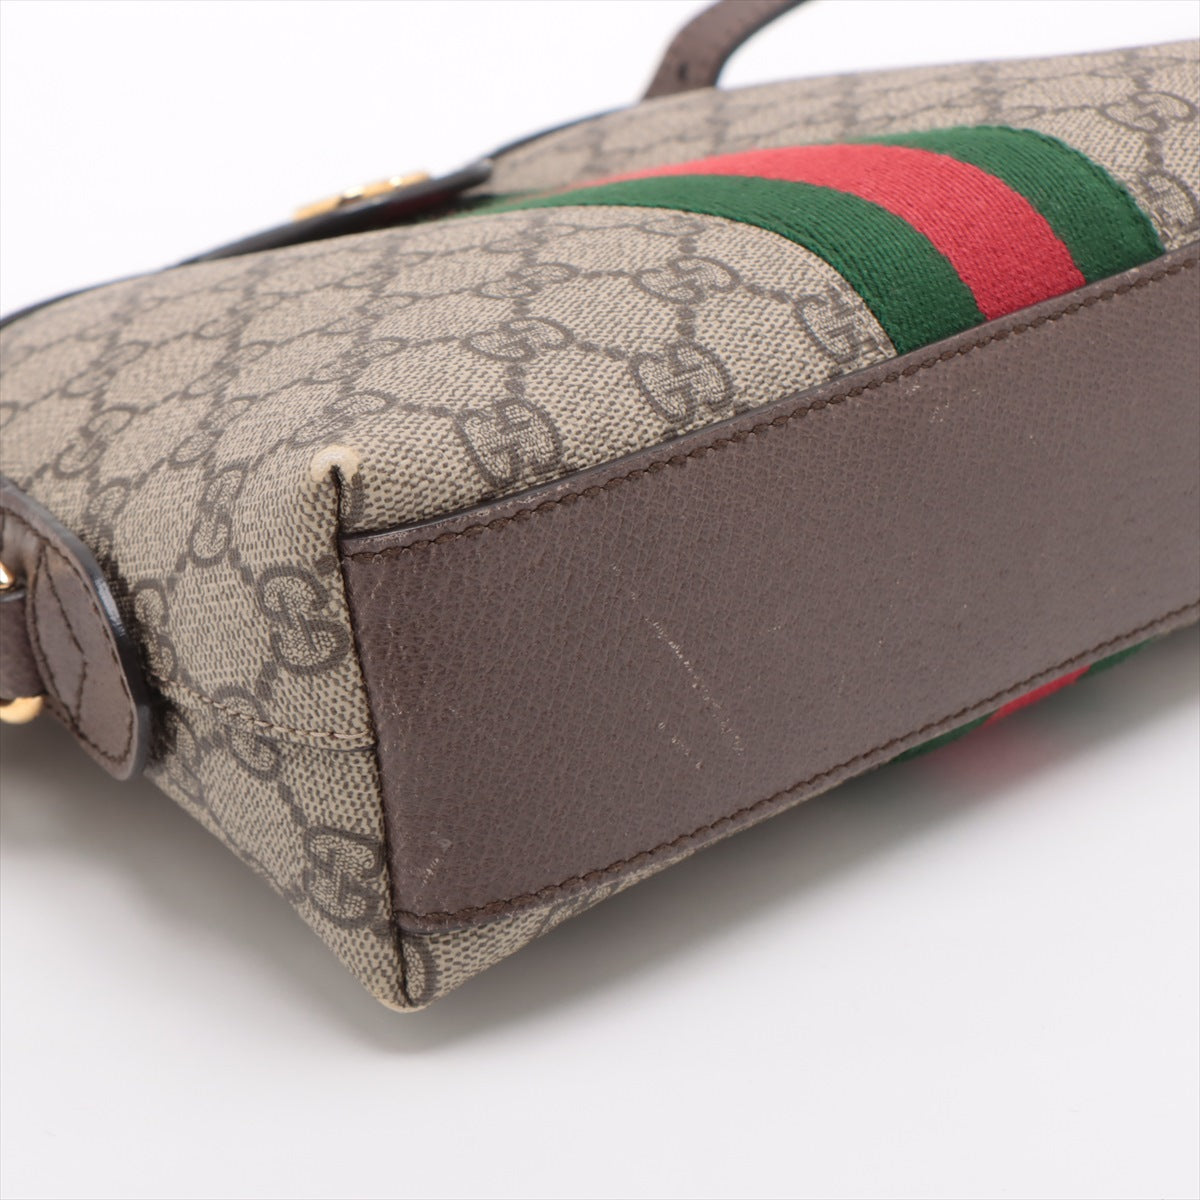 Gucci GG Supreme Ophidia PVC & leather Shoulder Bag Beige 499621